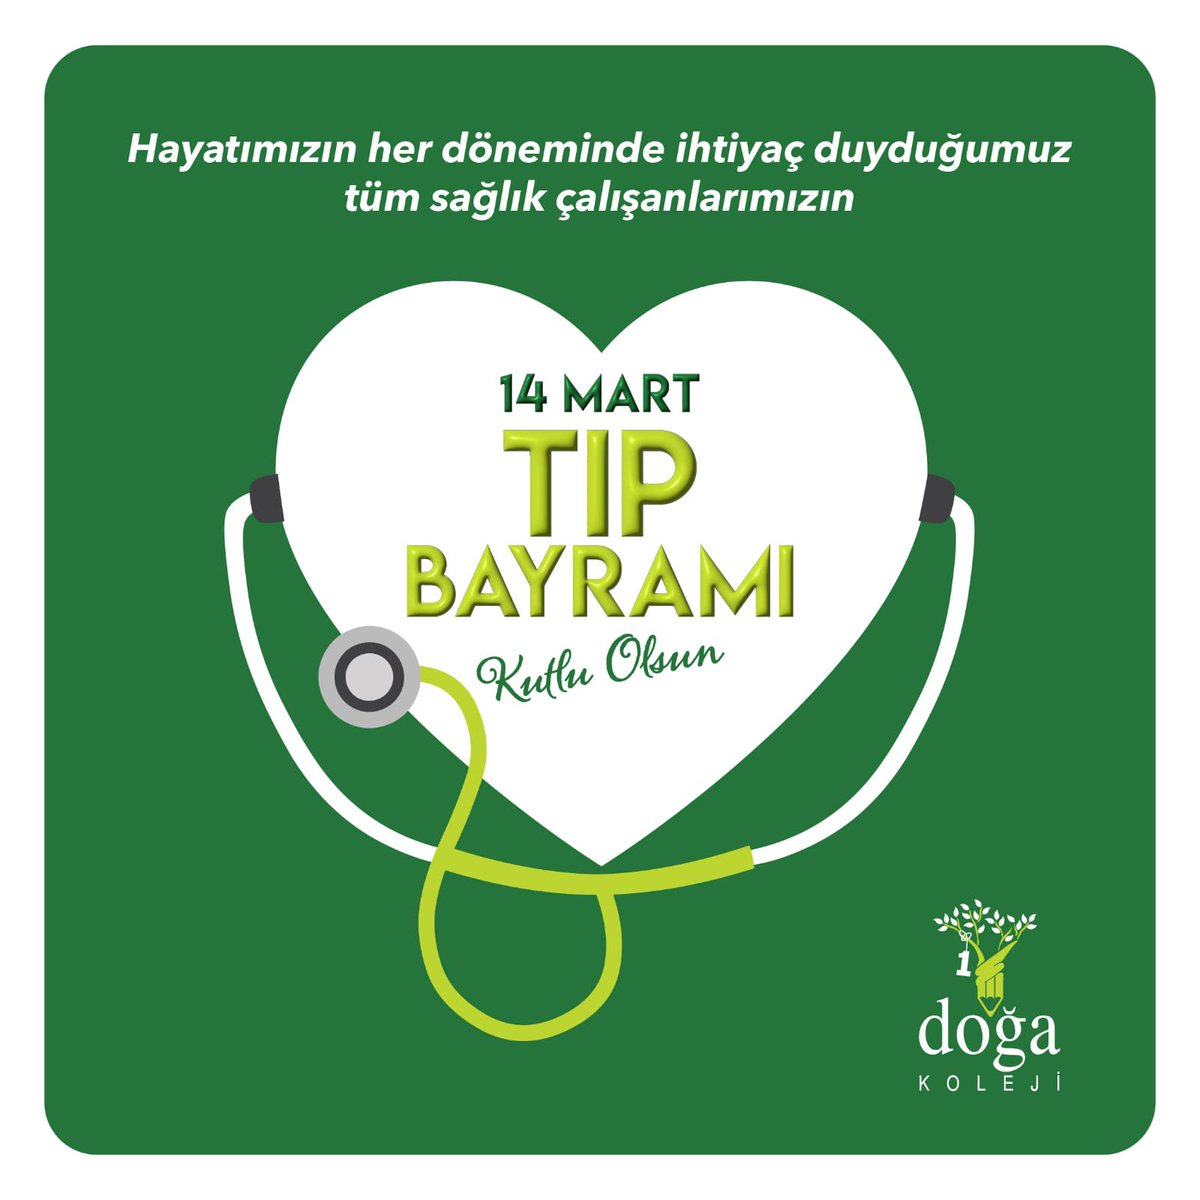 Tüm sağlık çalışanlarımızın 14 Mart Tıp Bayramı kutlu olsun. İyi ki varsınız…💚 @KvancBarlas @basaraksoy